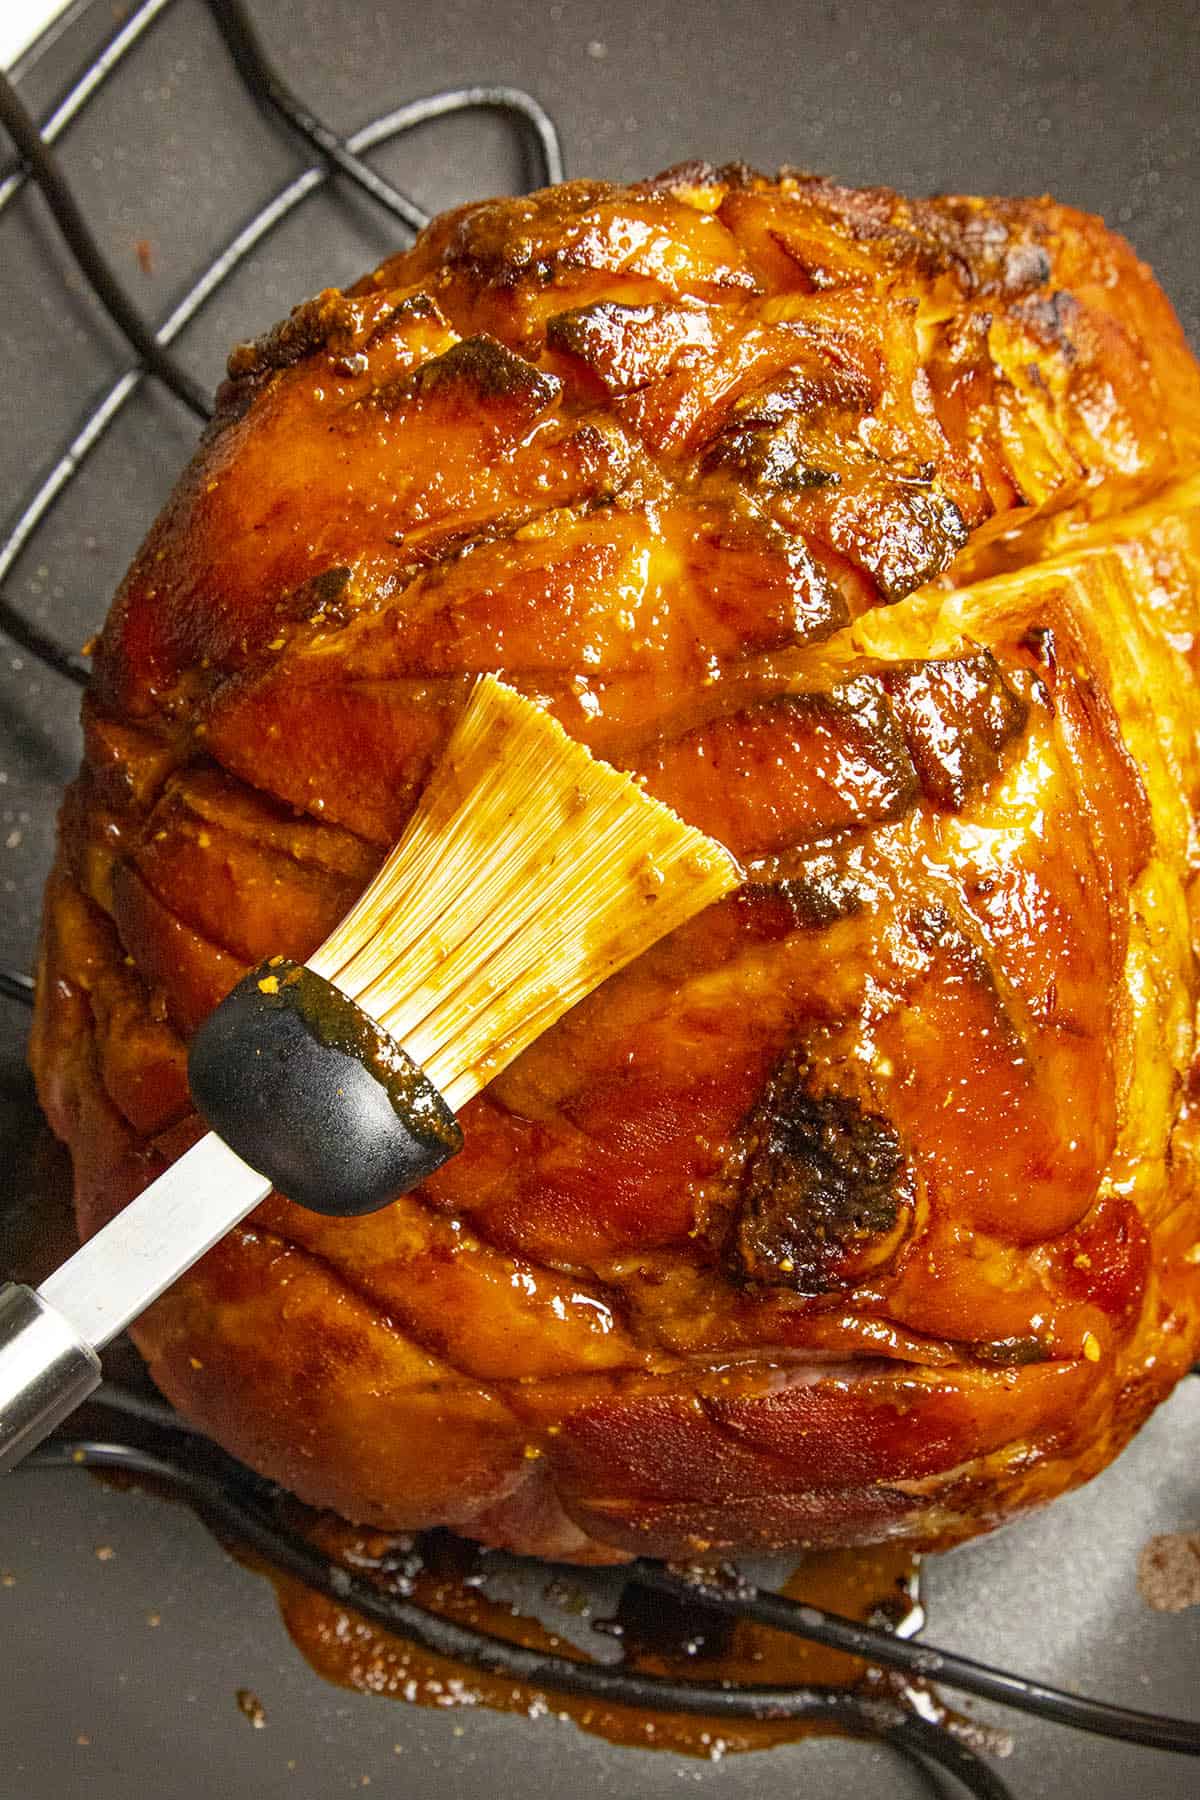 Glazing the baked ham